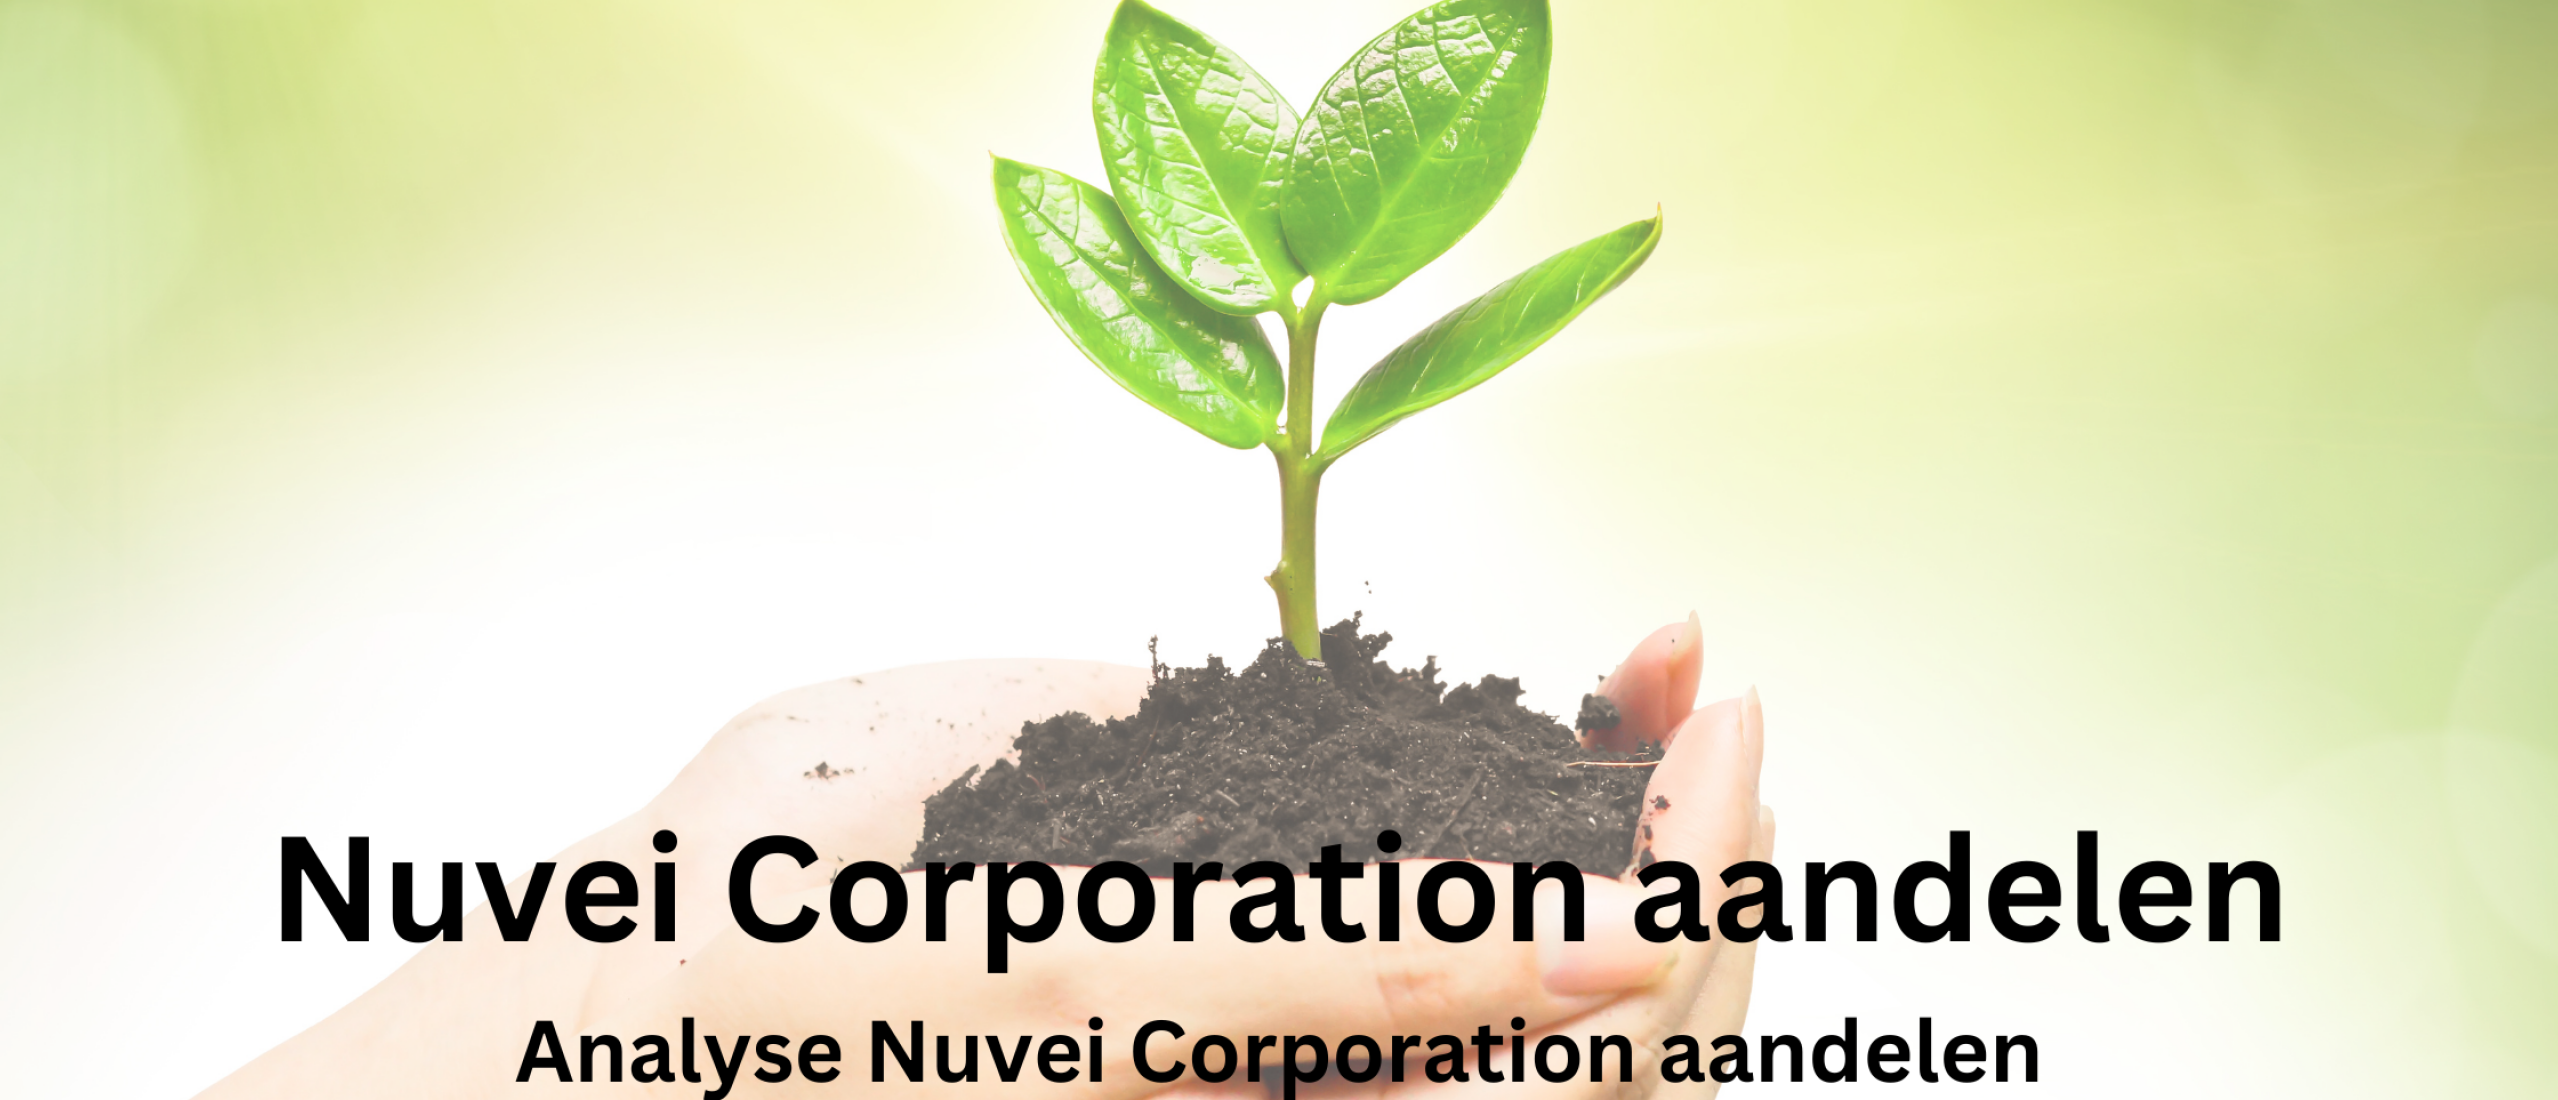 nuvei-corporation-aandelen-kopen